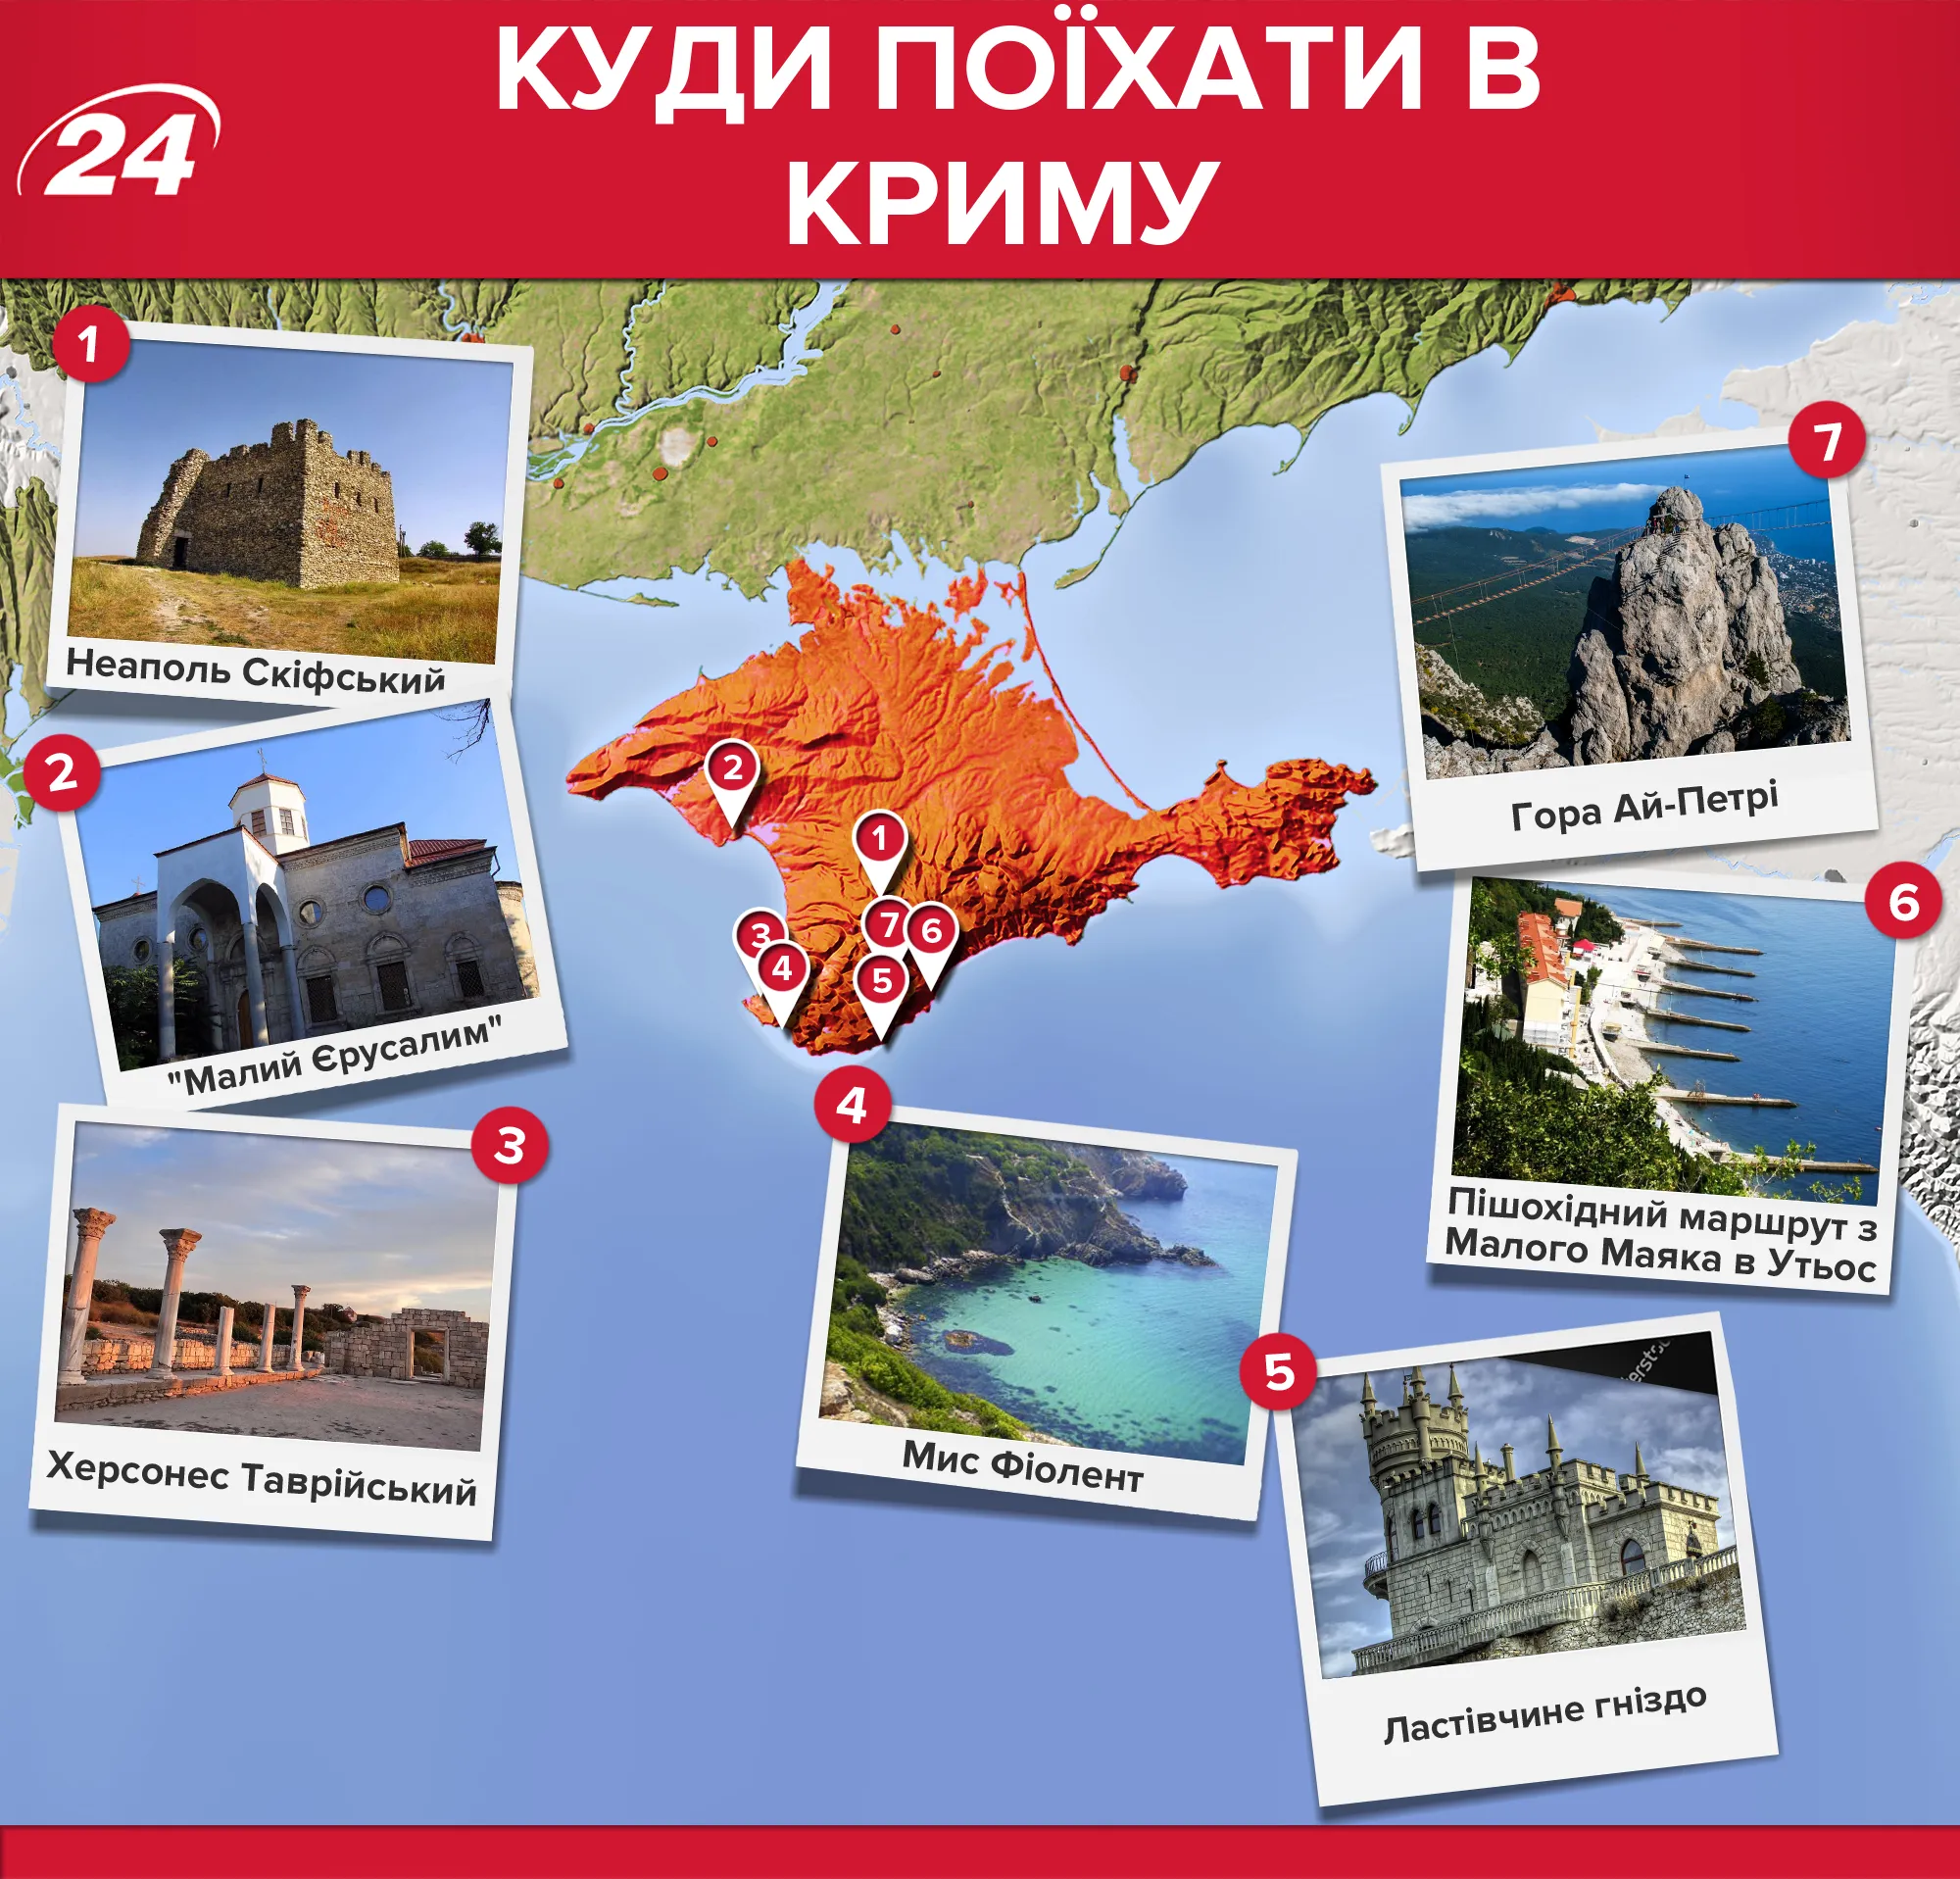 Кримський півотсрів: які місця варто відвідати